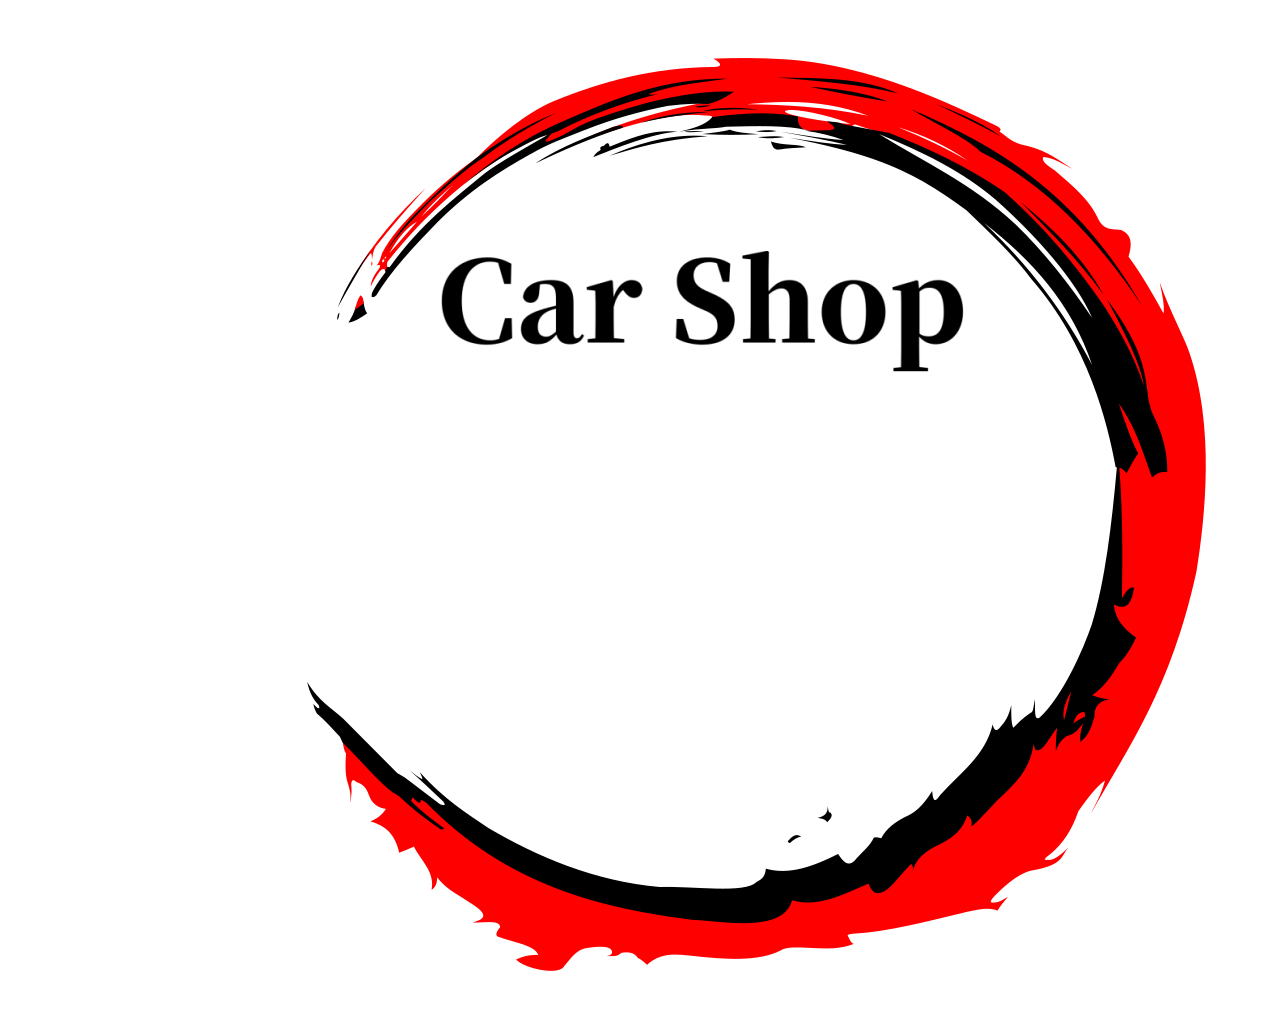  Car Shop